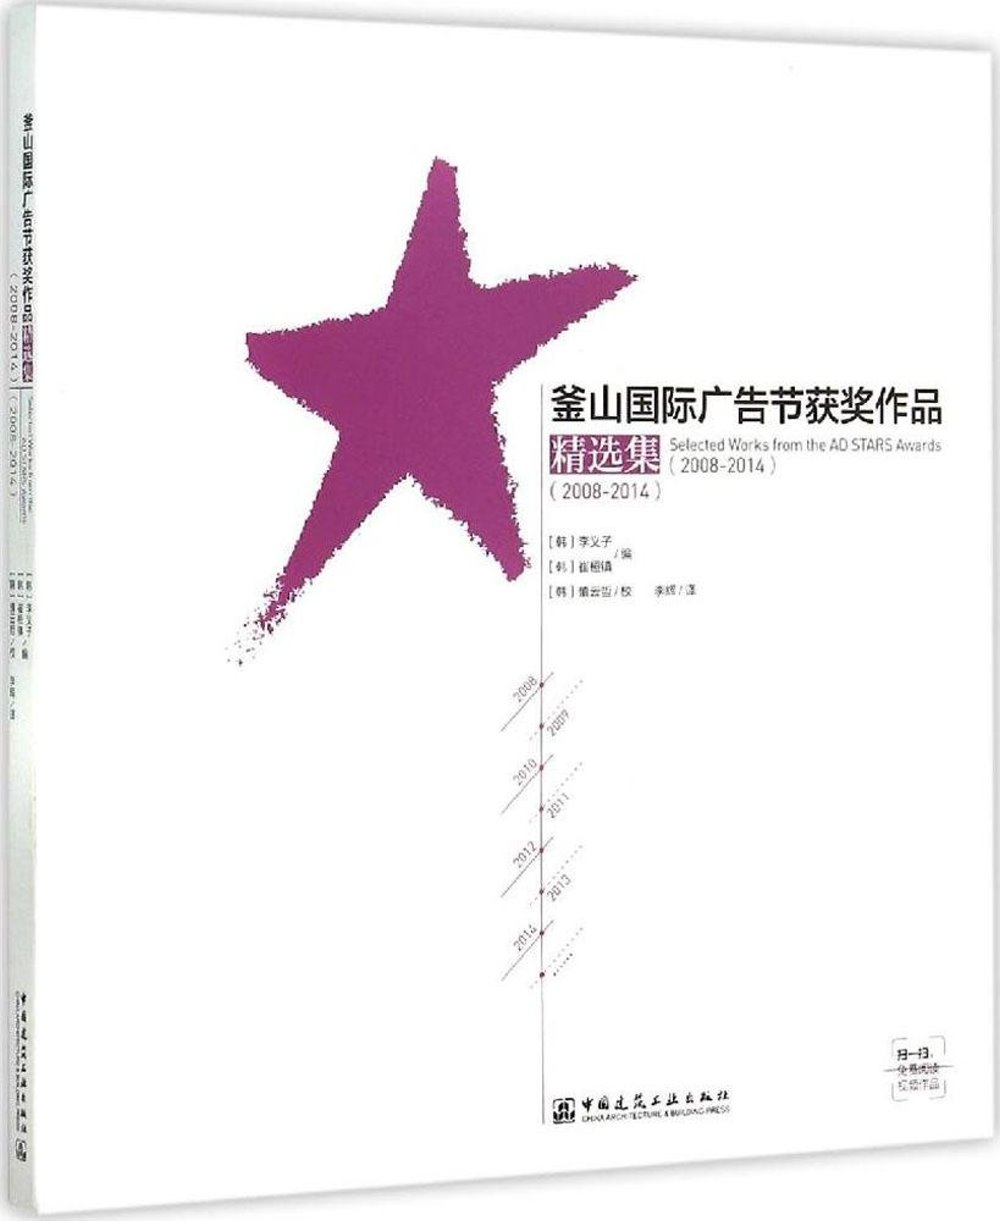 釜山國際廣告節獲獎作品精選集（2008-2014）